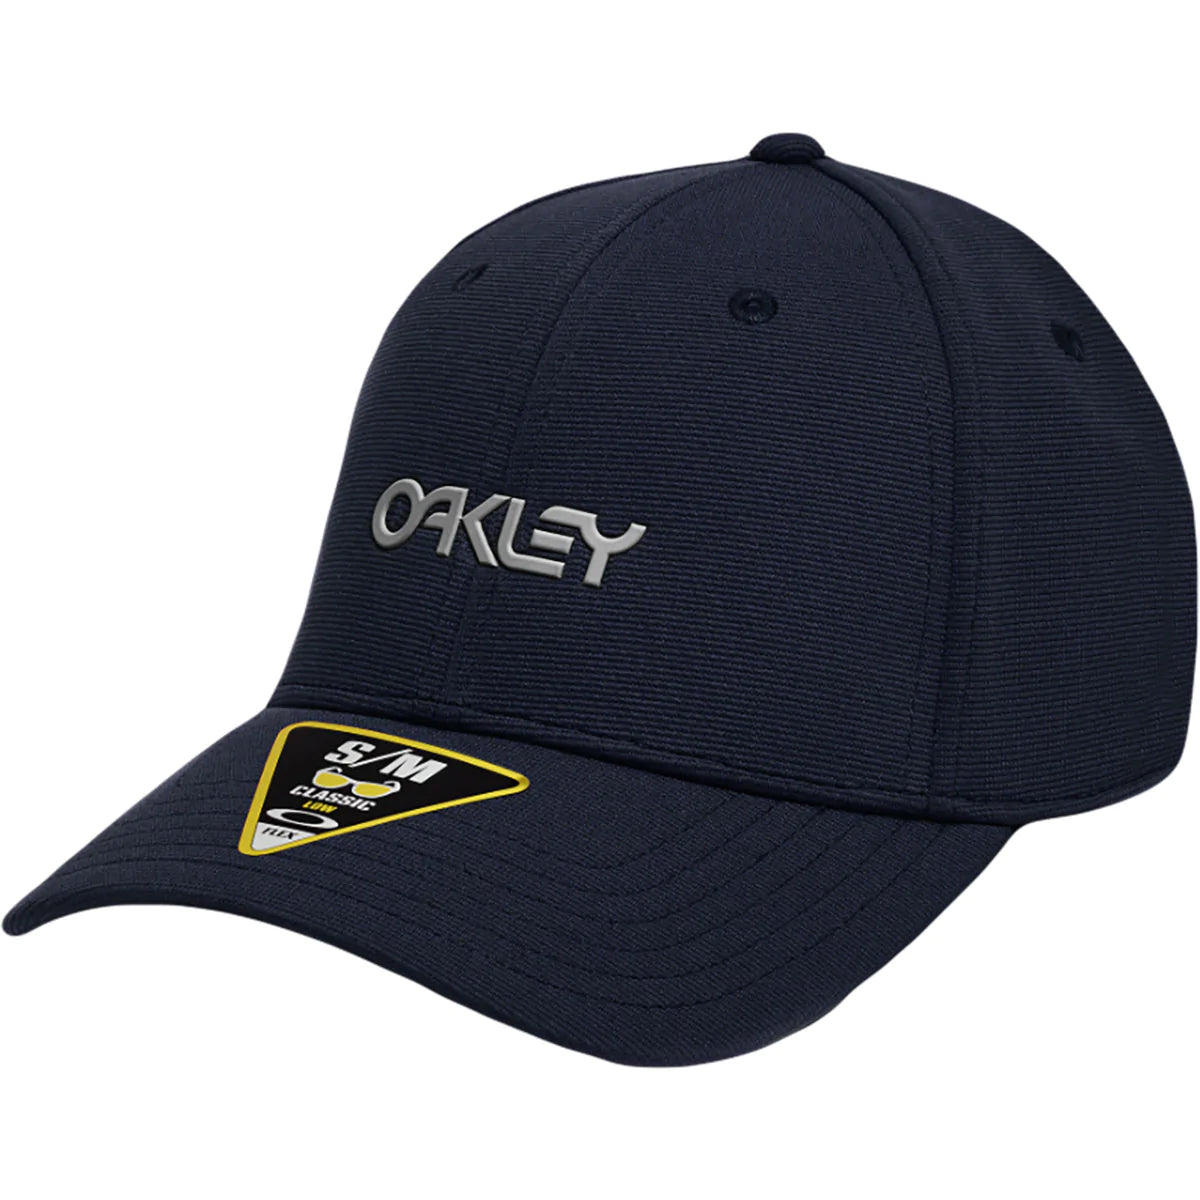 Oakley 6 Panel Stretch Metallic Men's Flexfit Hats